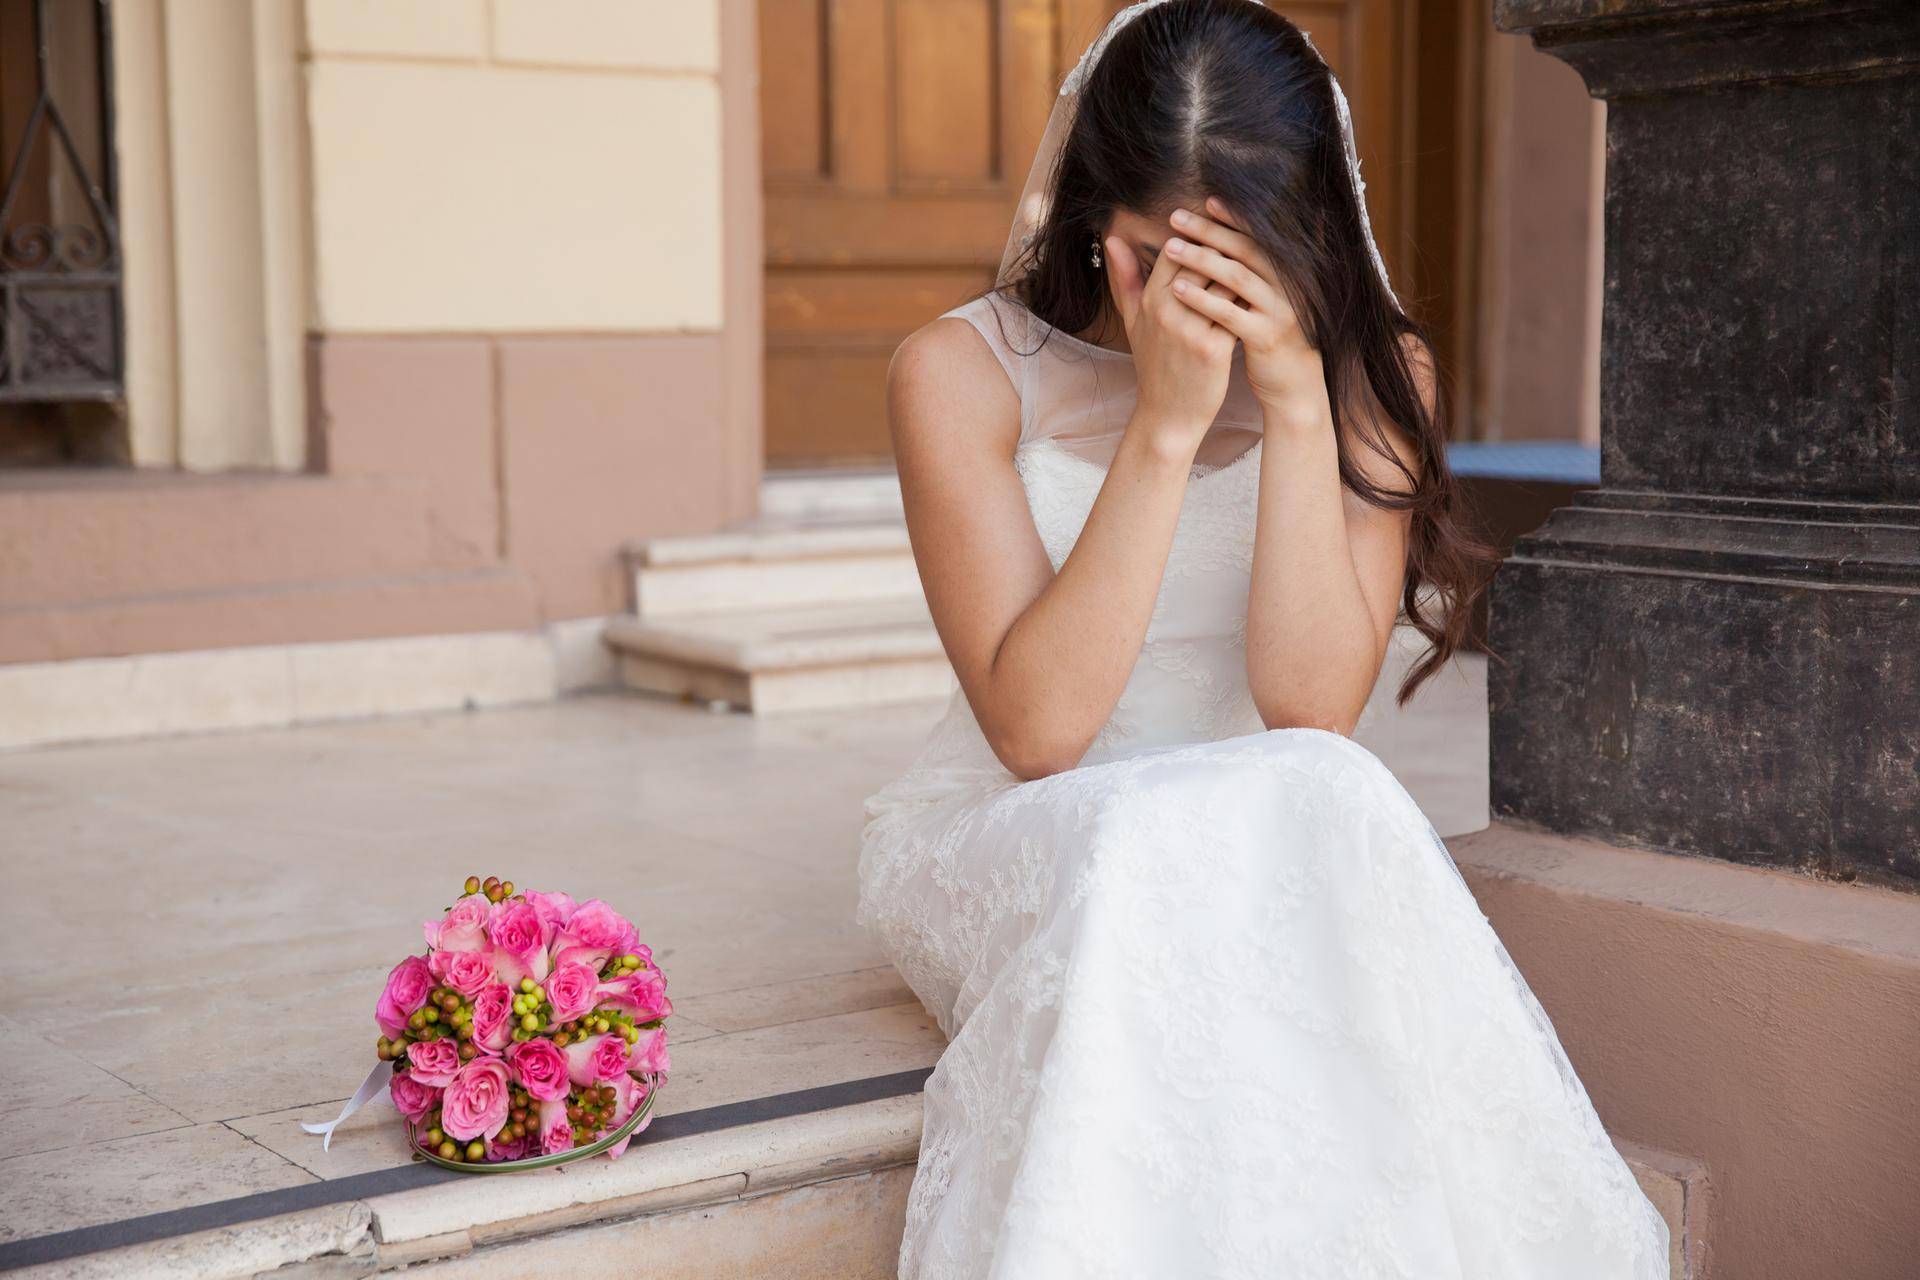 Что предлагают невесте при входе в дом жениха на татарской свадьбе?